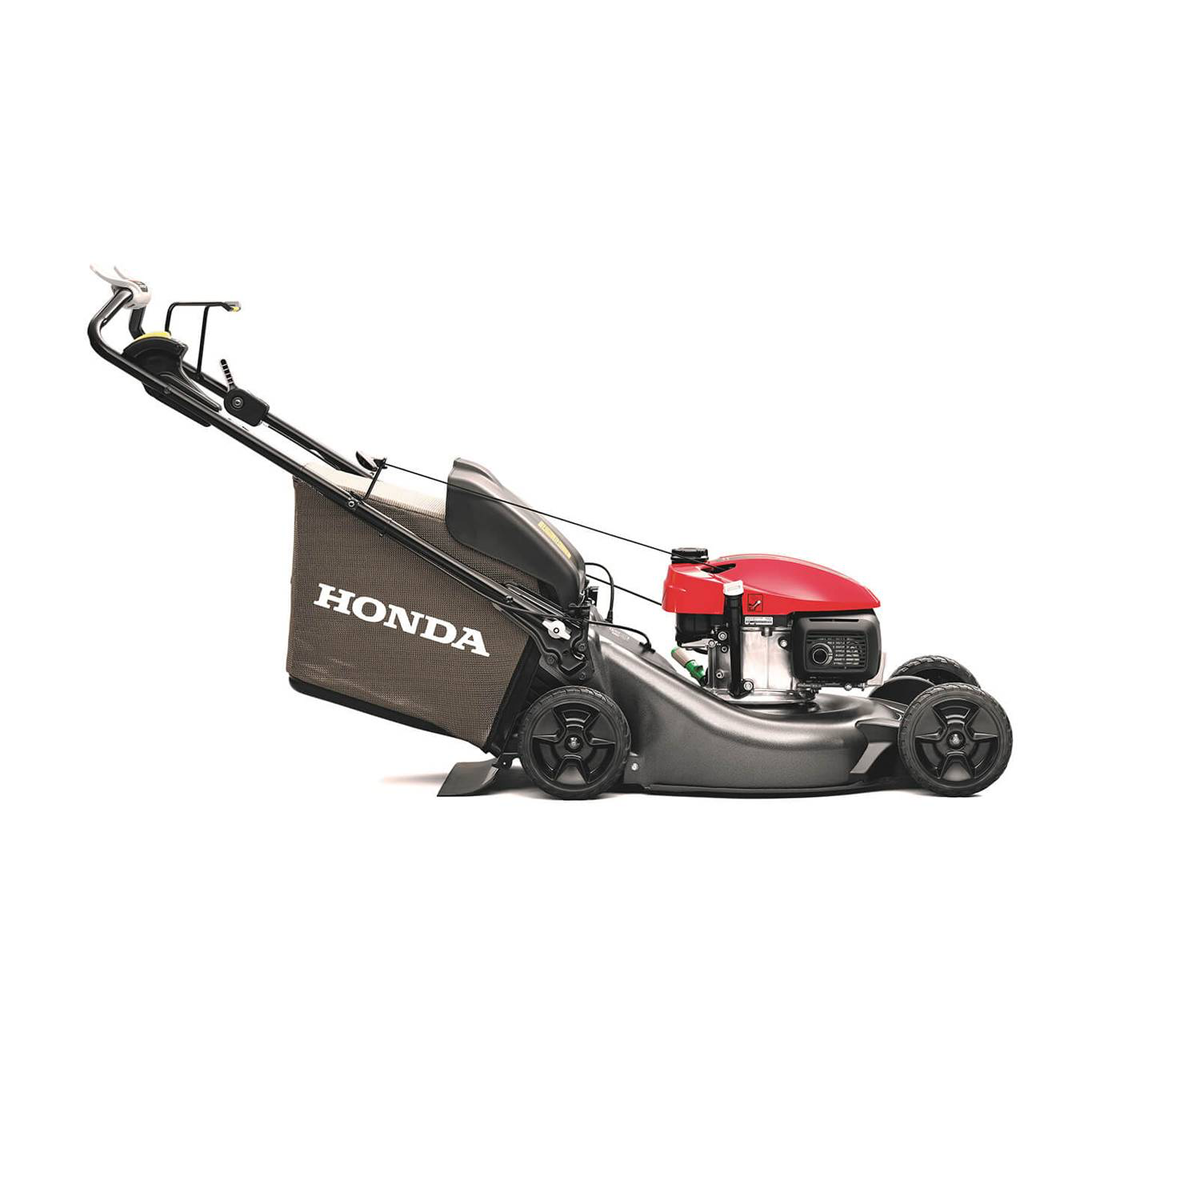 Honda HRN 536 VY Petrol Lawn Mower